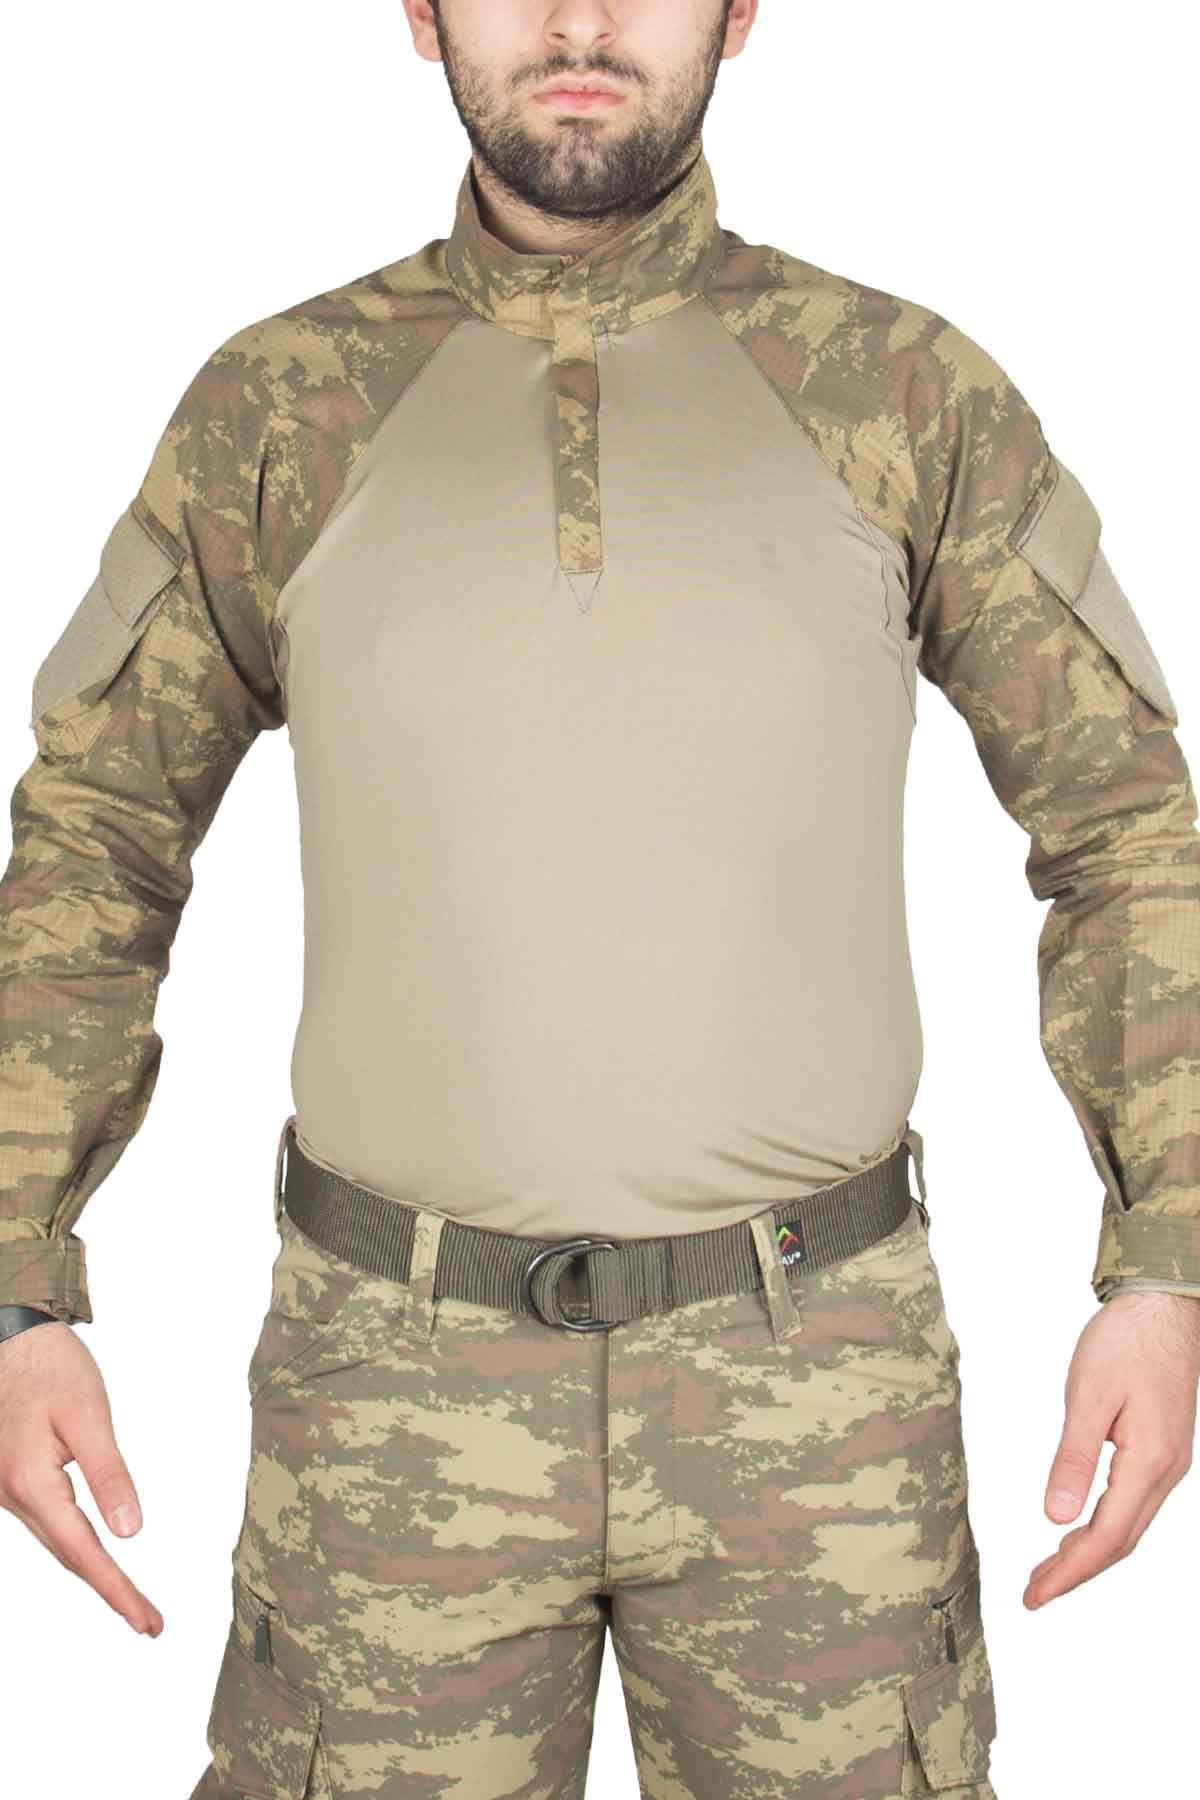 Piyade Kamuflaj Combat Tişört - Polis Sepeti